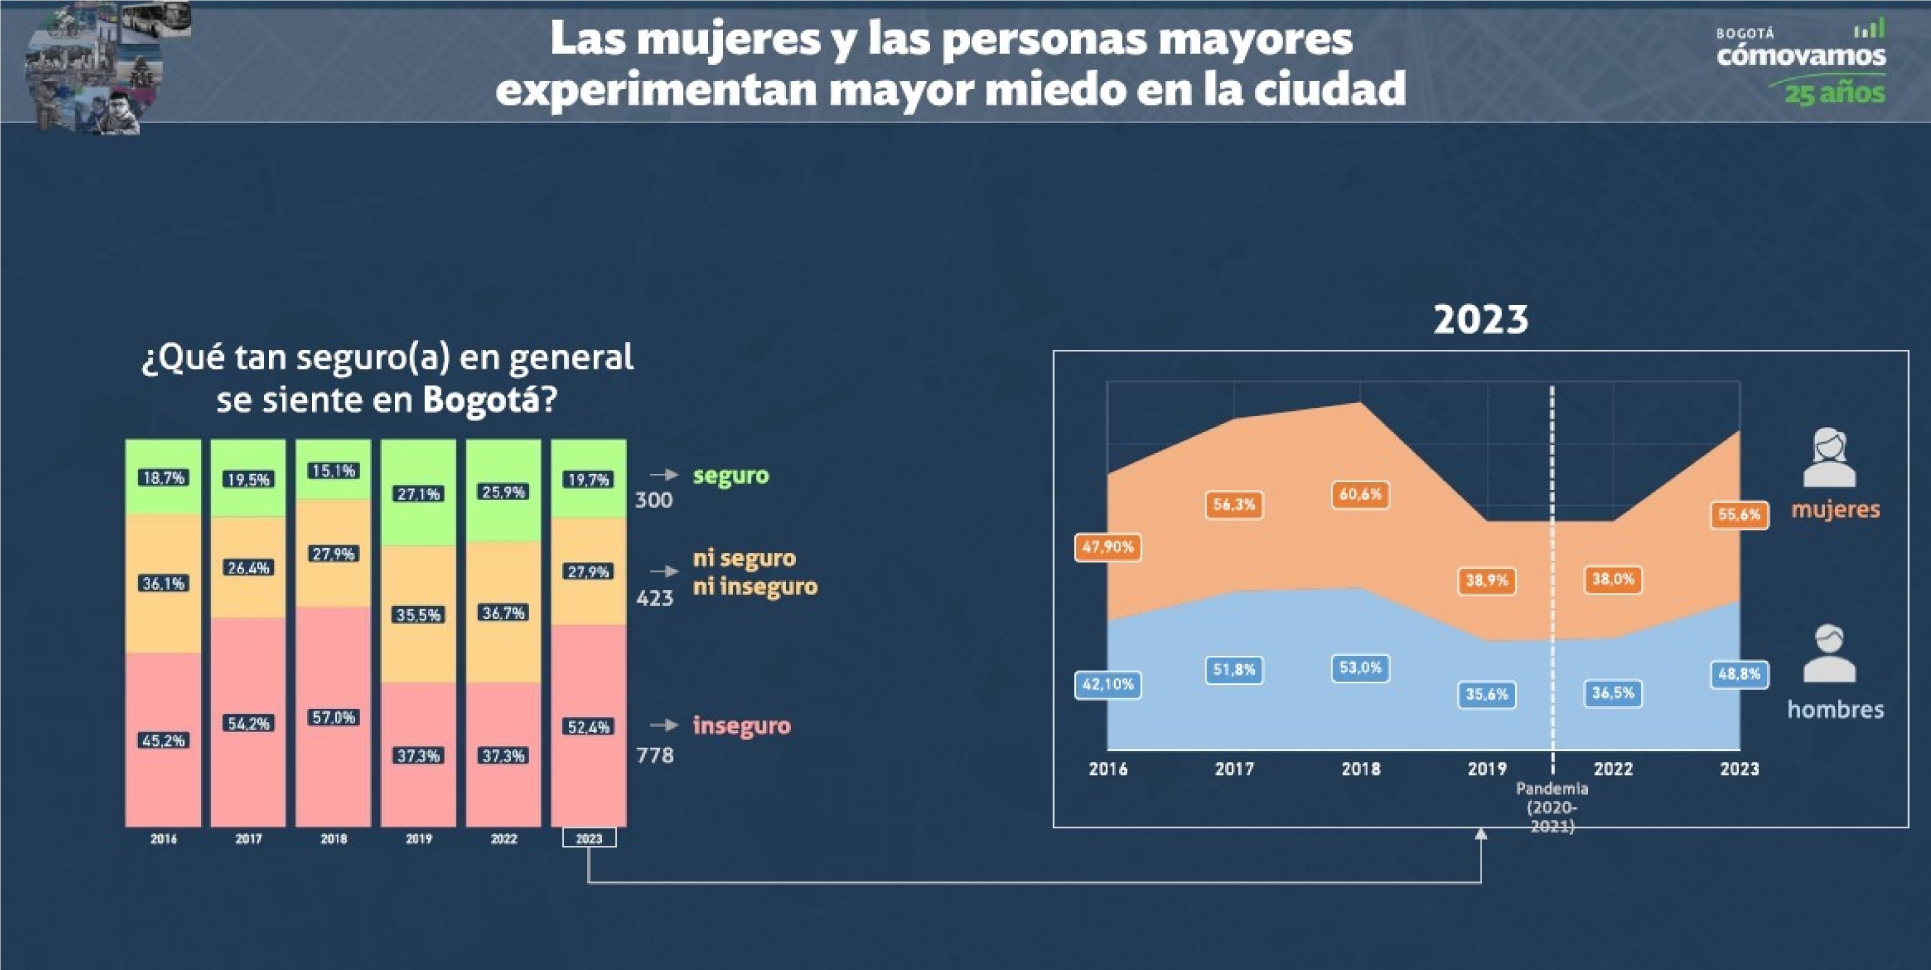 Indicó la encuesta que analizó los últimos seis años de percepción, que las mujeres sienten la ciudad más insegura que los hombres. Vale referir que el 52,4% de los encuestados, hombres y mujeres, se sienten inseguros en Bogotá.